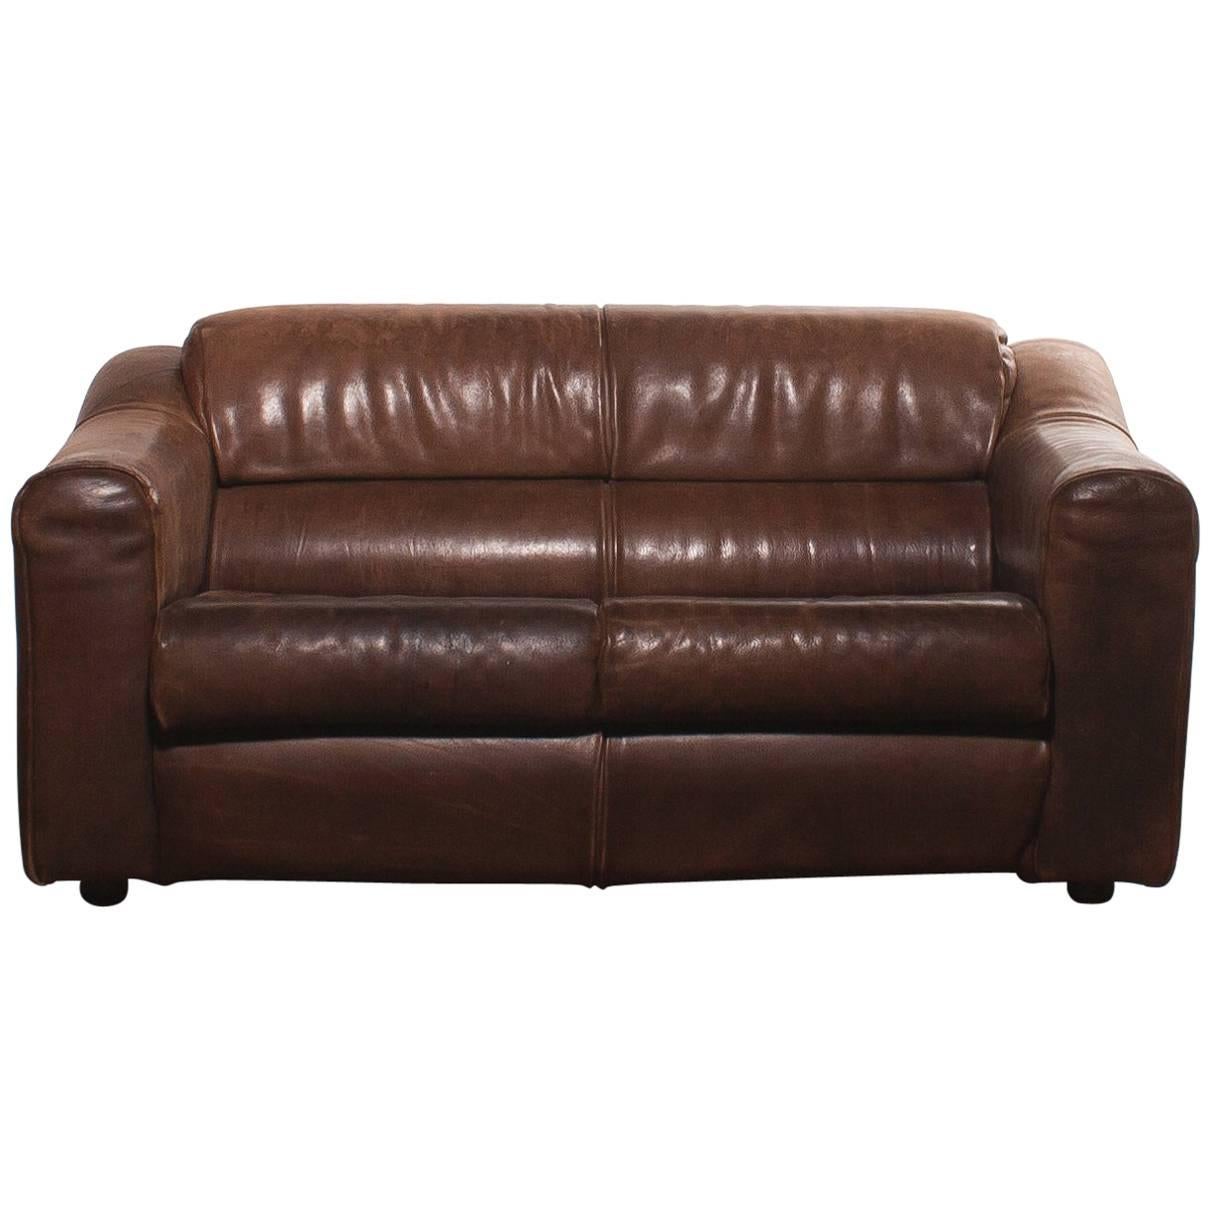 1970s, Buffalo Leather Two-Seat Sofa